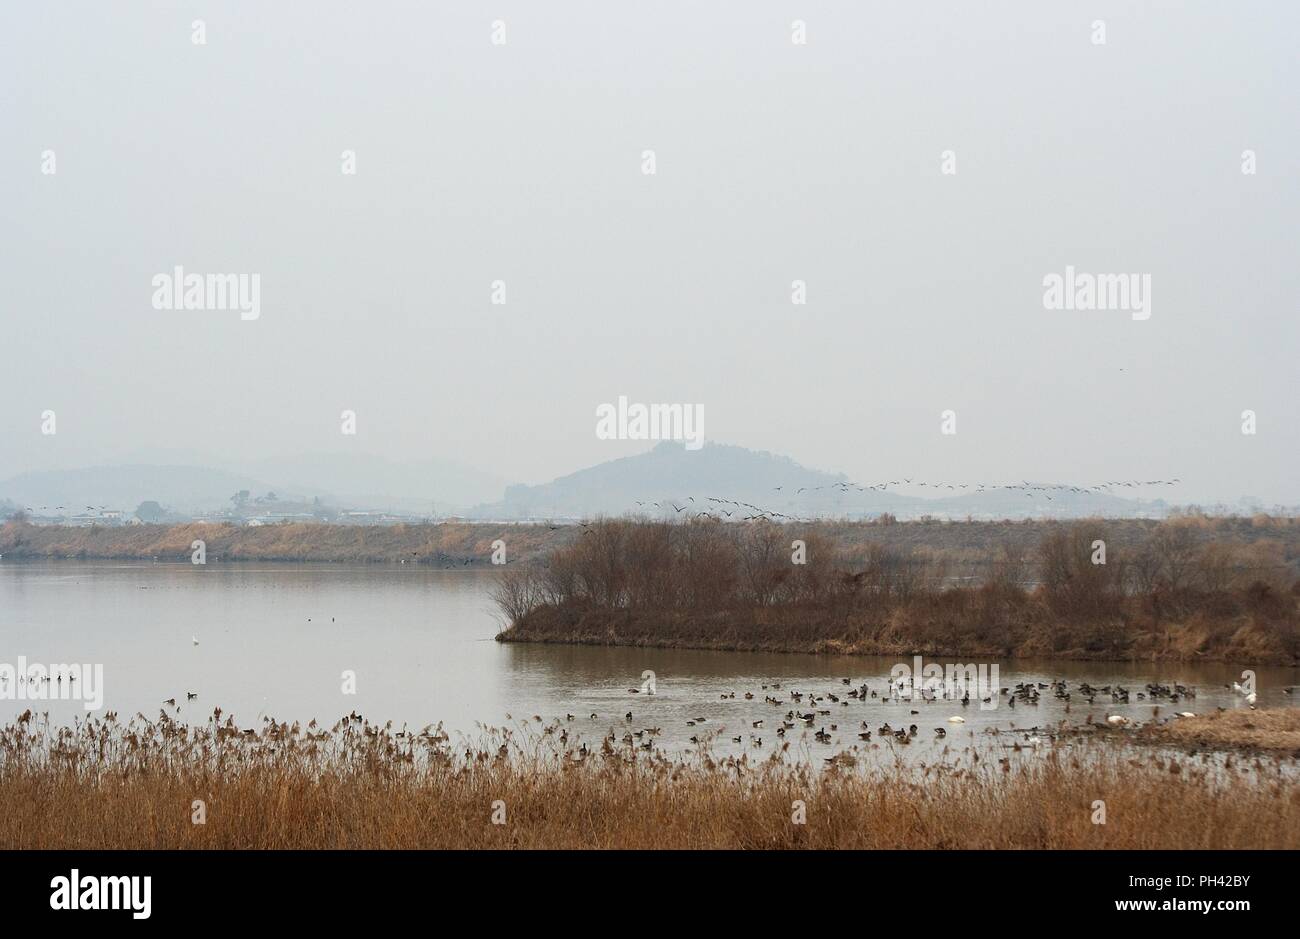 Piscine paisible d'oiseaux migrateurs dans le réservoir Junam, Corée Banque D'Images